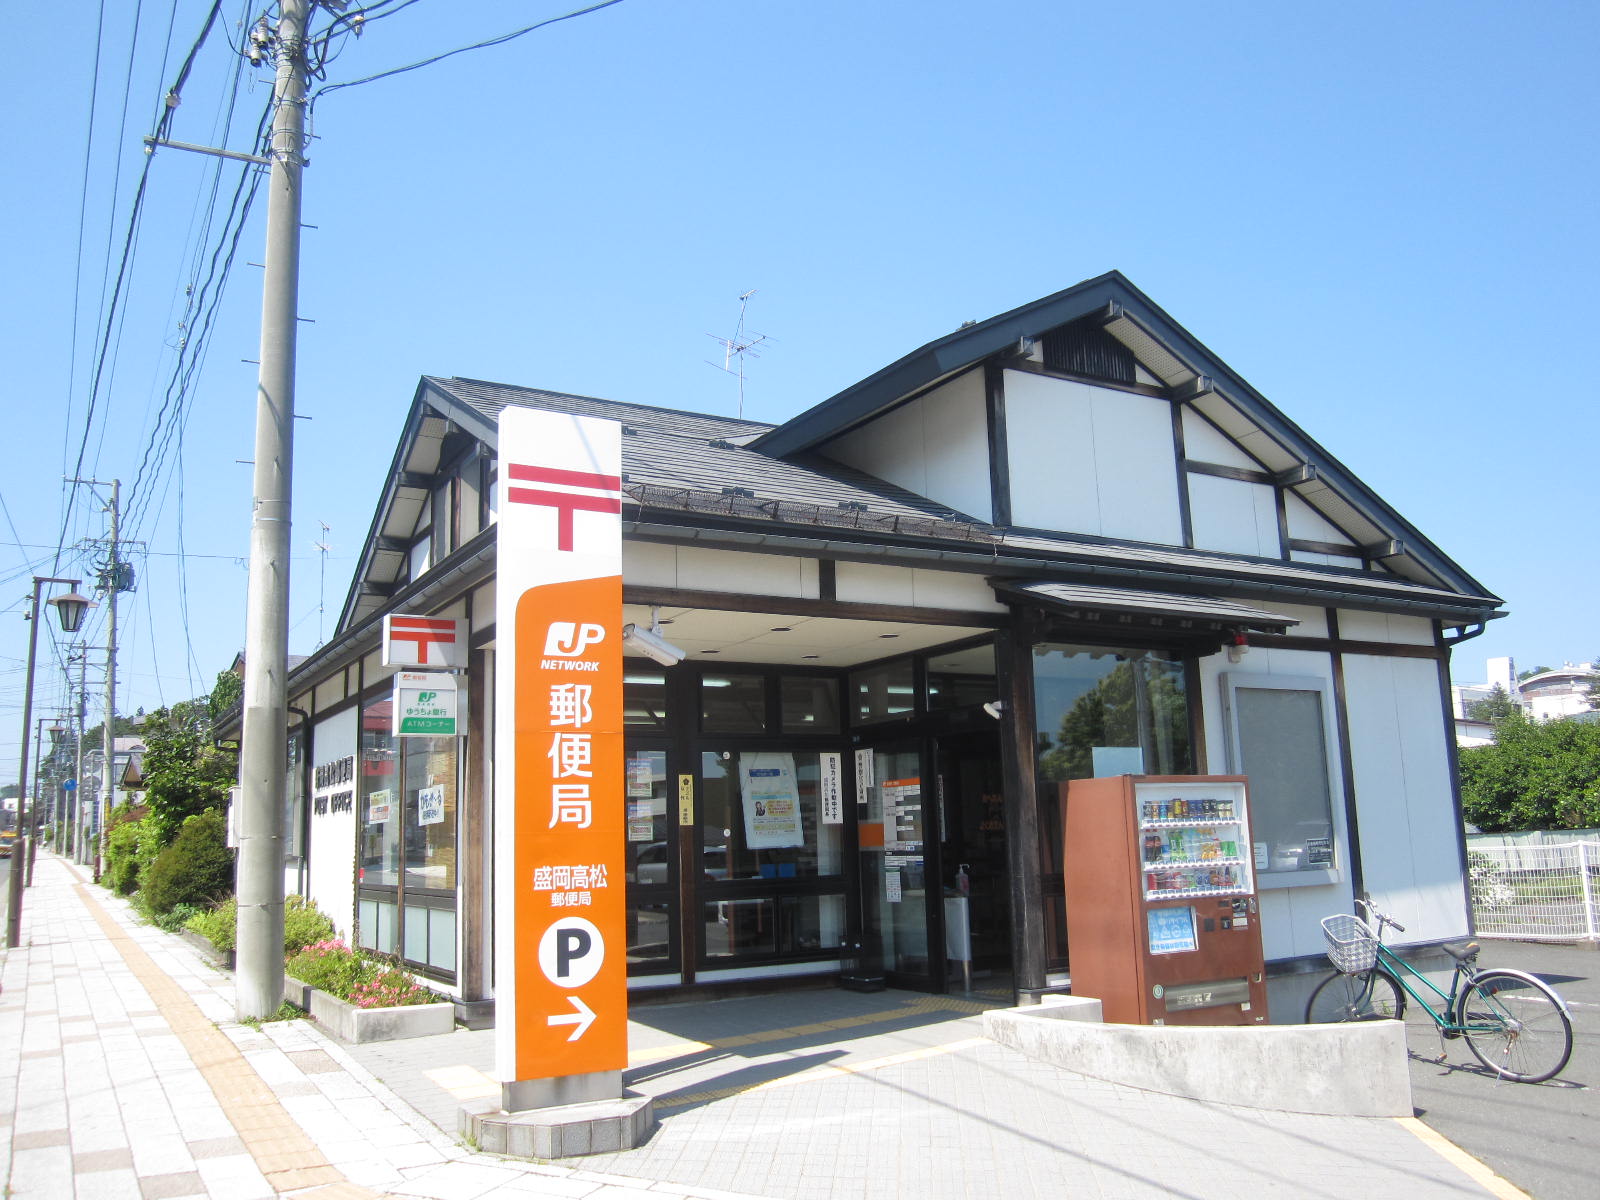 post office. 494m to Morioka Takamatsu post office (post office)